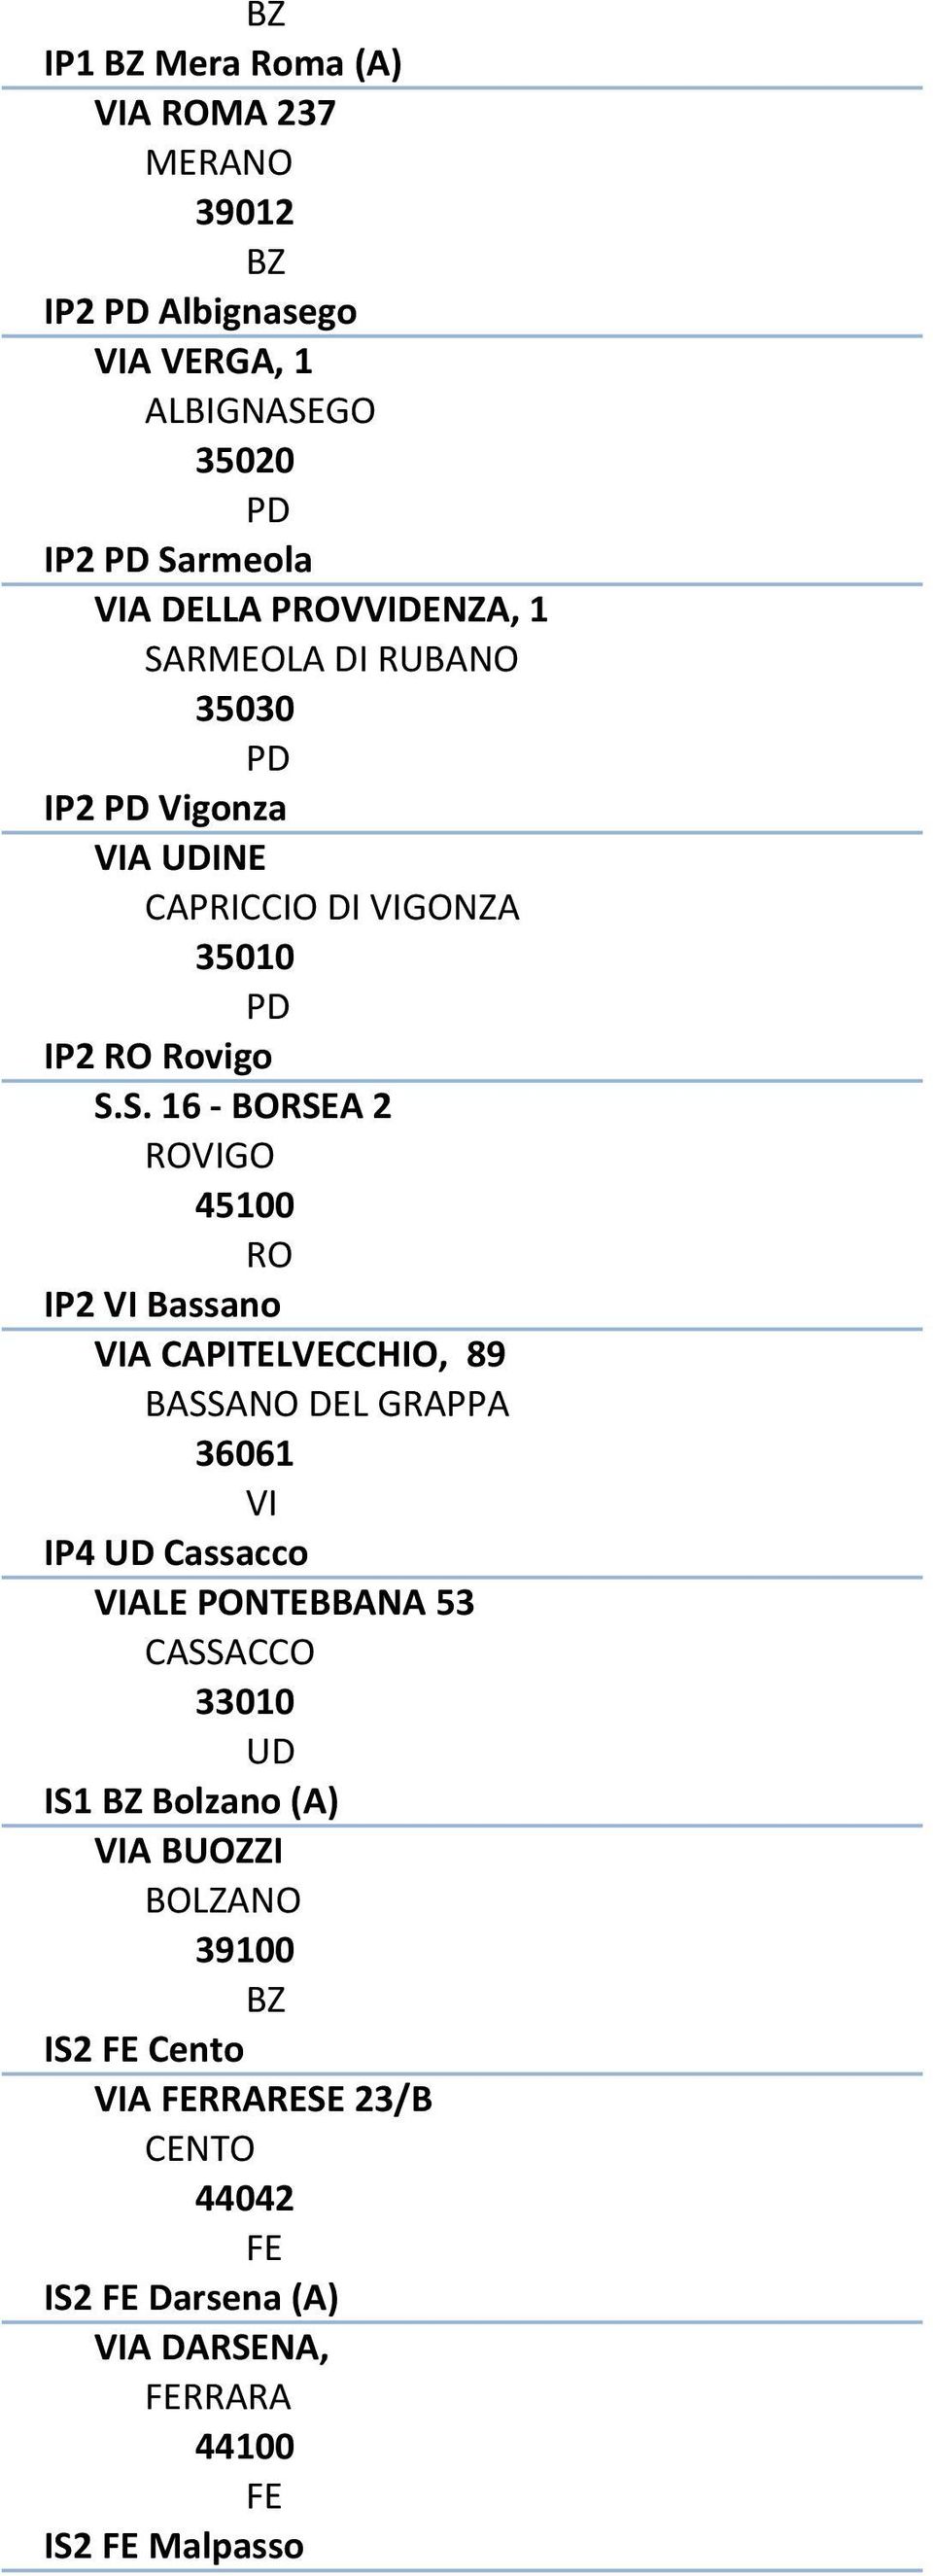 Bassano VIA CAPITELVECCHIO, 89 BASSANO DEL GRAPPA 36061 VI IP4 Cassacco VIALE PONTEBBANA 53 CASSACCO 33010 IS1 Bolzano (A) VIA